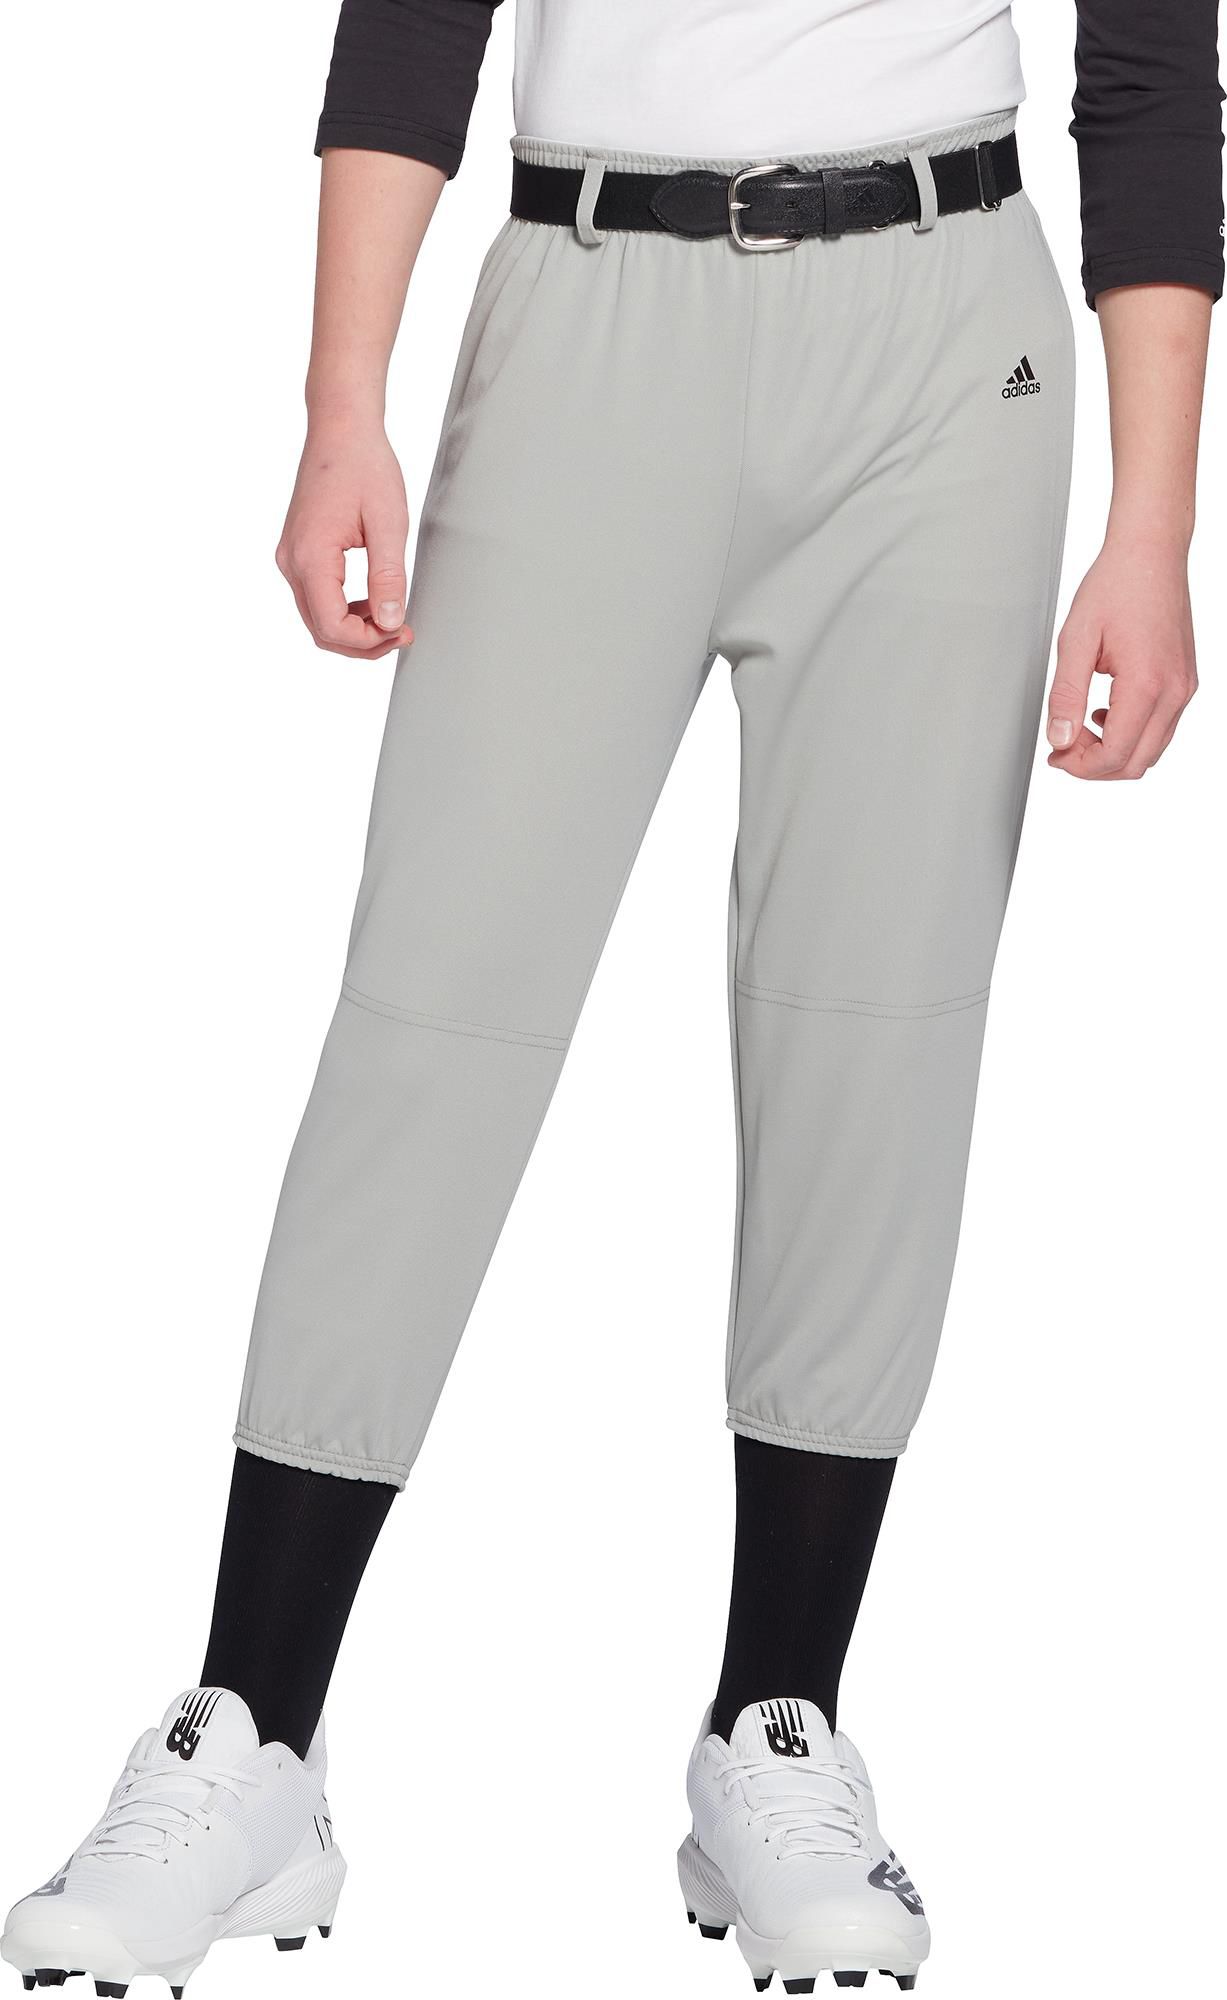 adidas baseball pants with piping